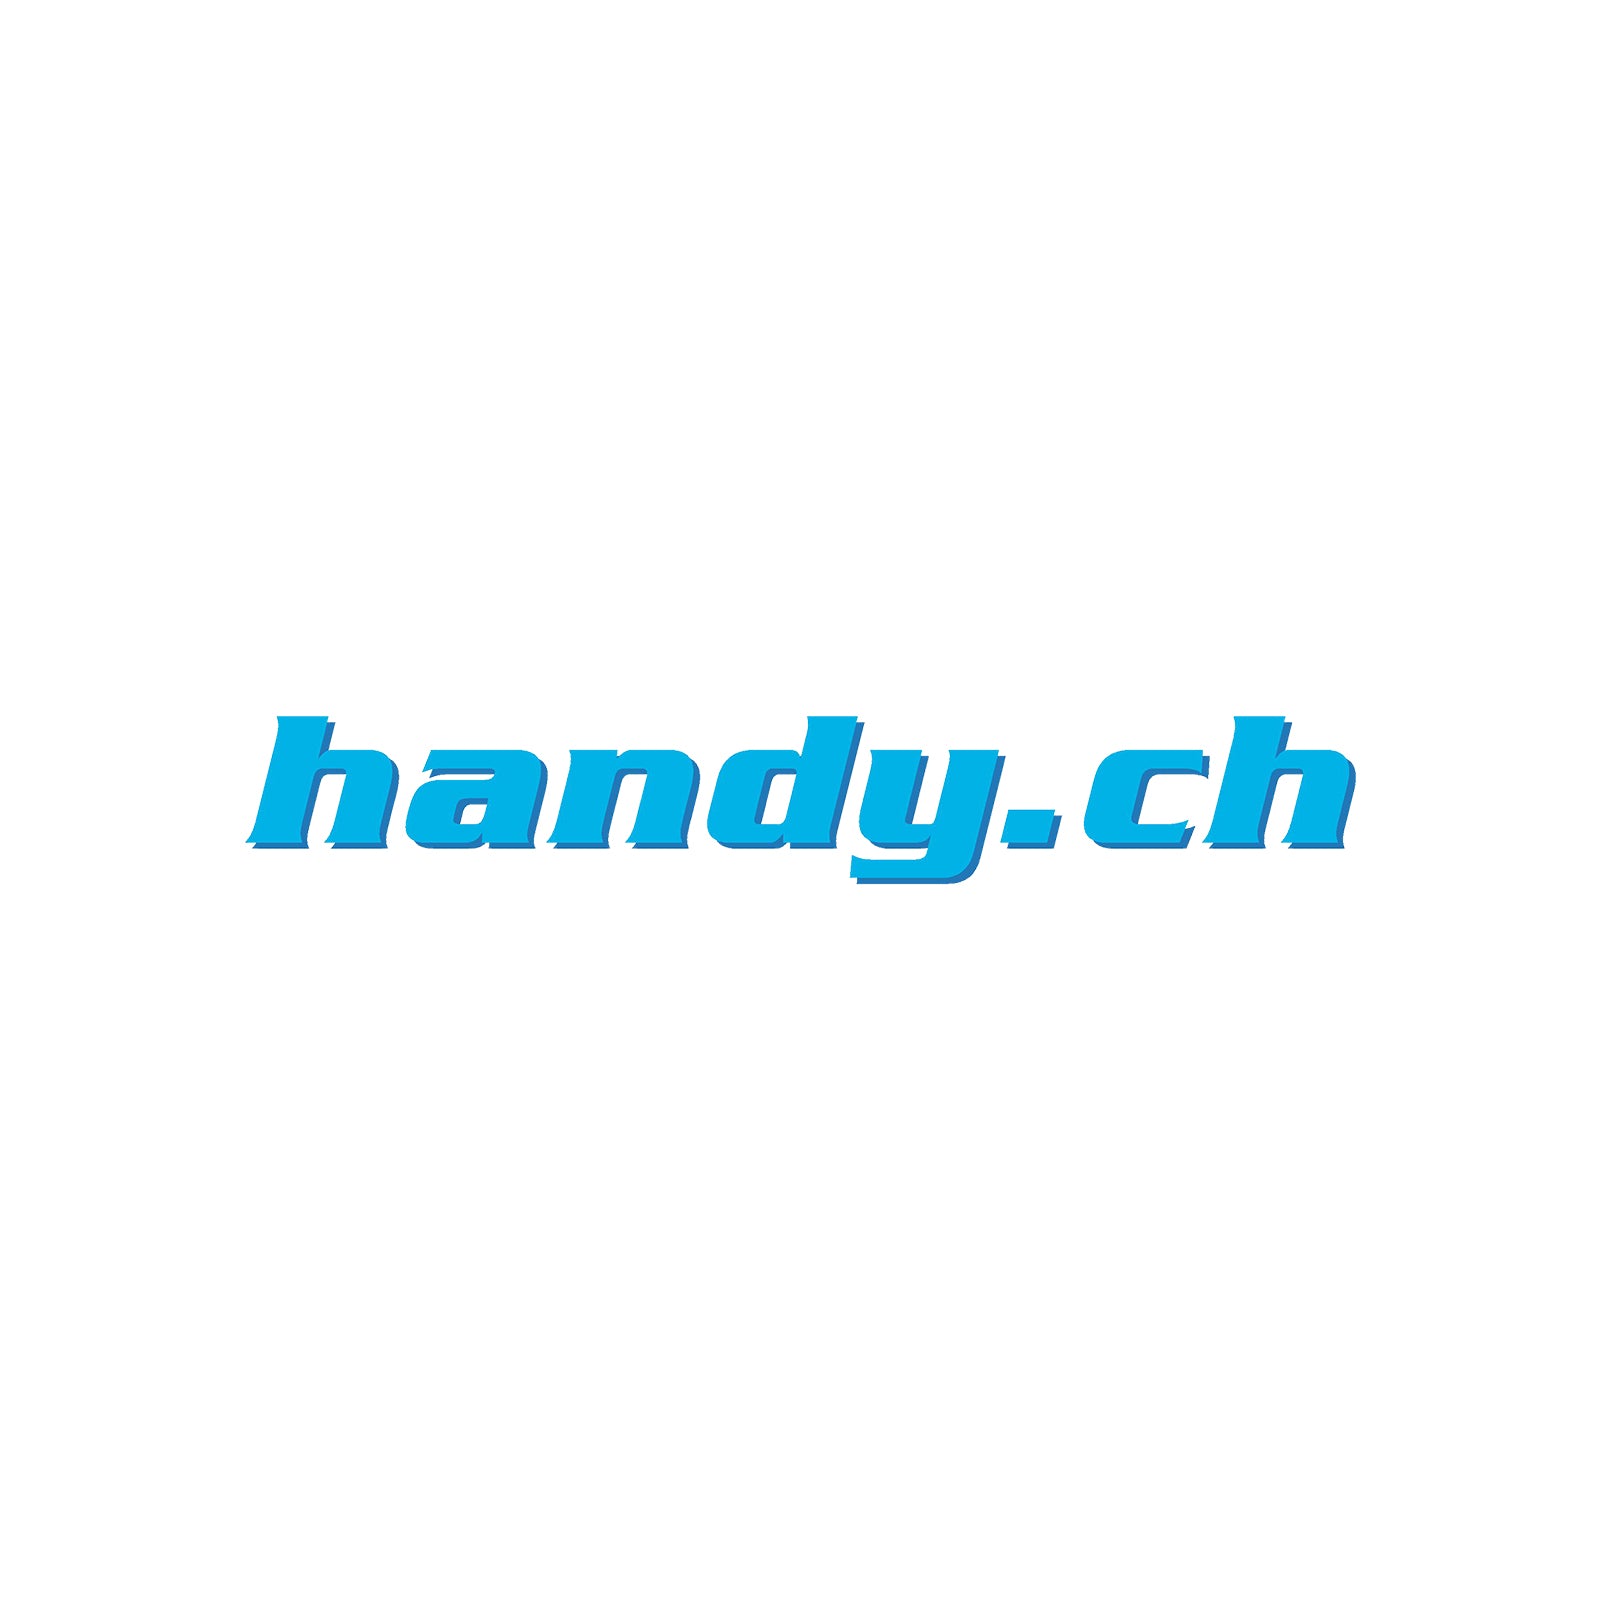 (c) Handy.ch